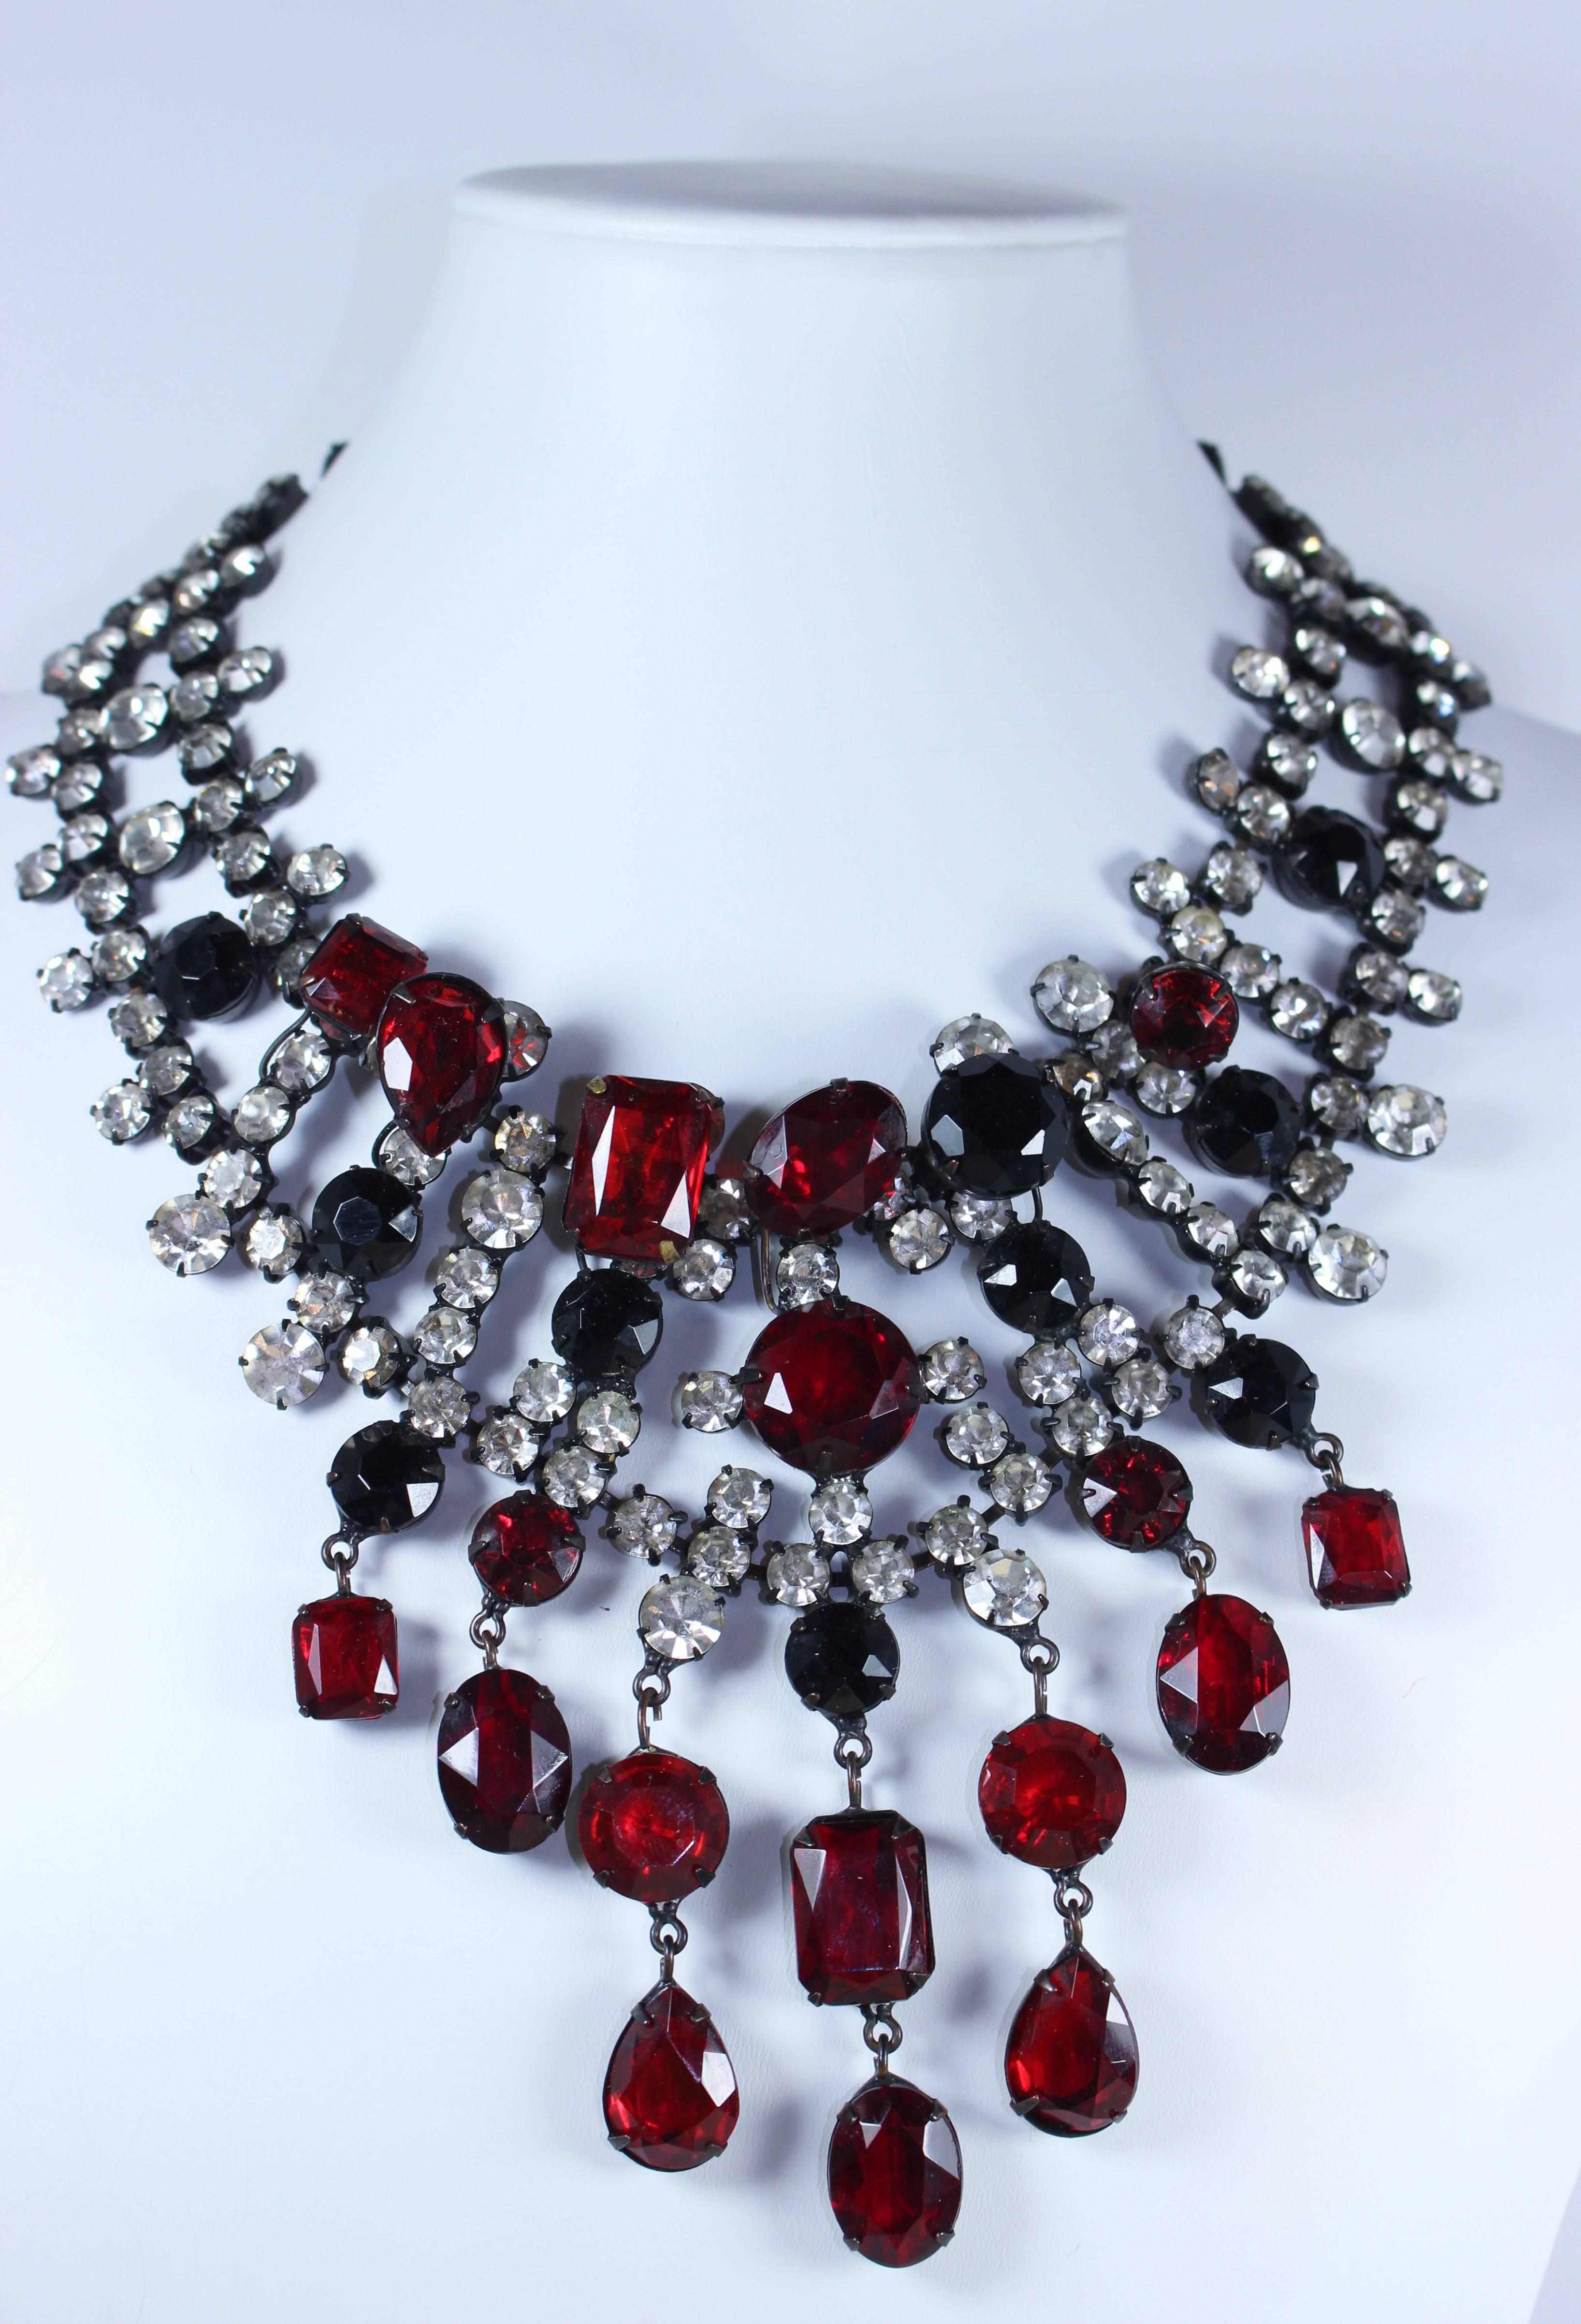 Diese KJL-Halskette besteht aus schwarzem Metall mit weißen und roten Strasssteinen. Der Verschluss ist mit einer Schließe versehen. In tollem Vintage-Zustand.

  **Bitte vergleichen Sie die Maße für Ihre persönliche Genauigkeit. 

Maße